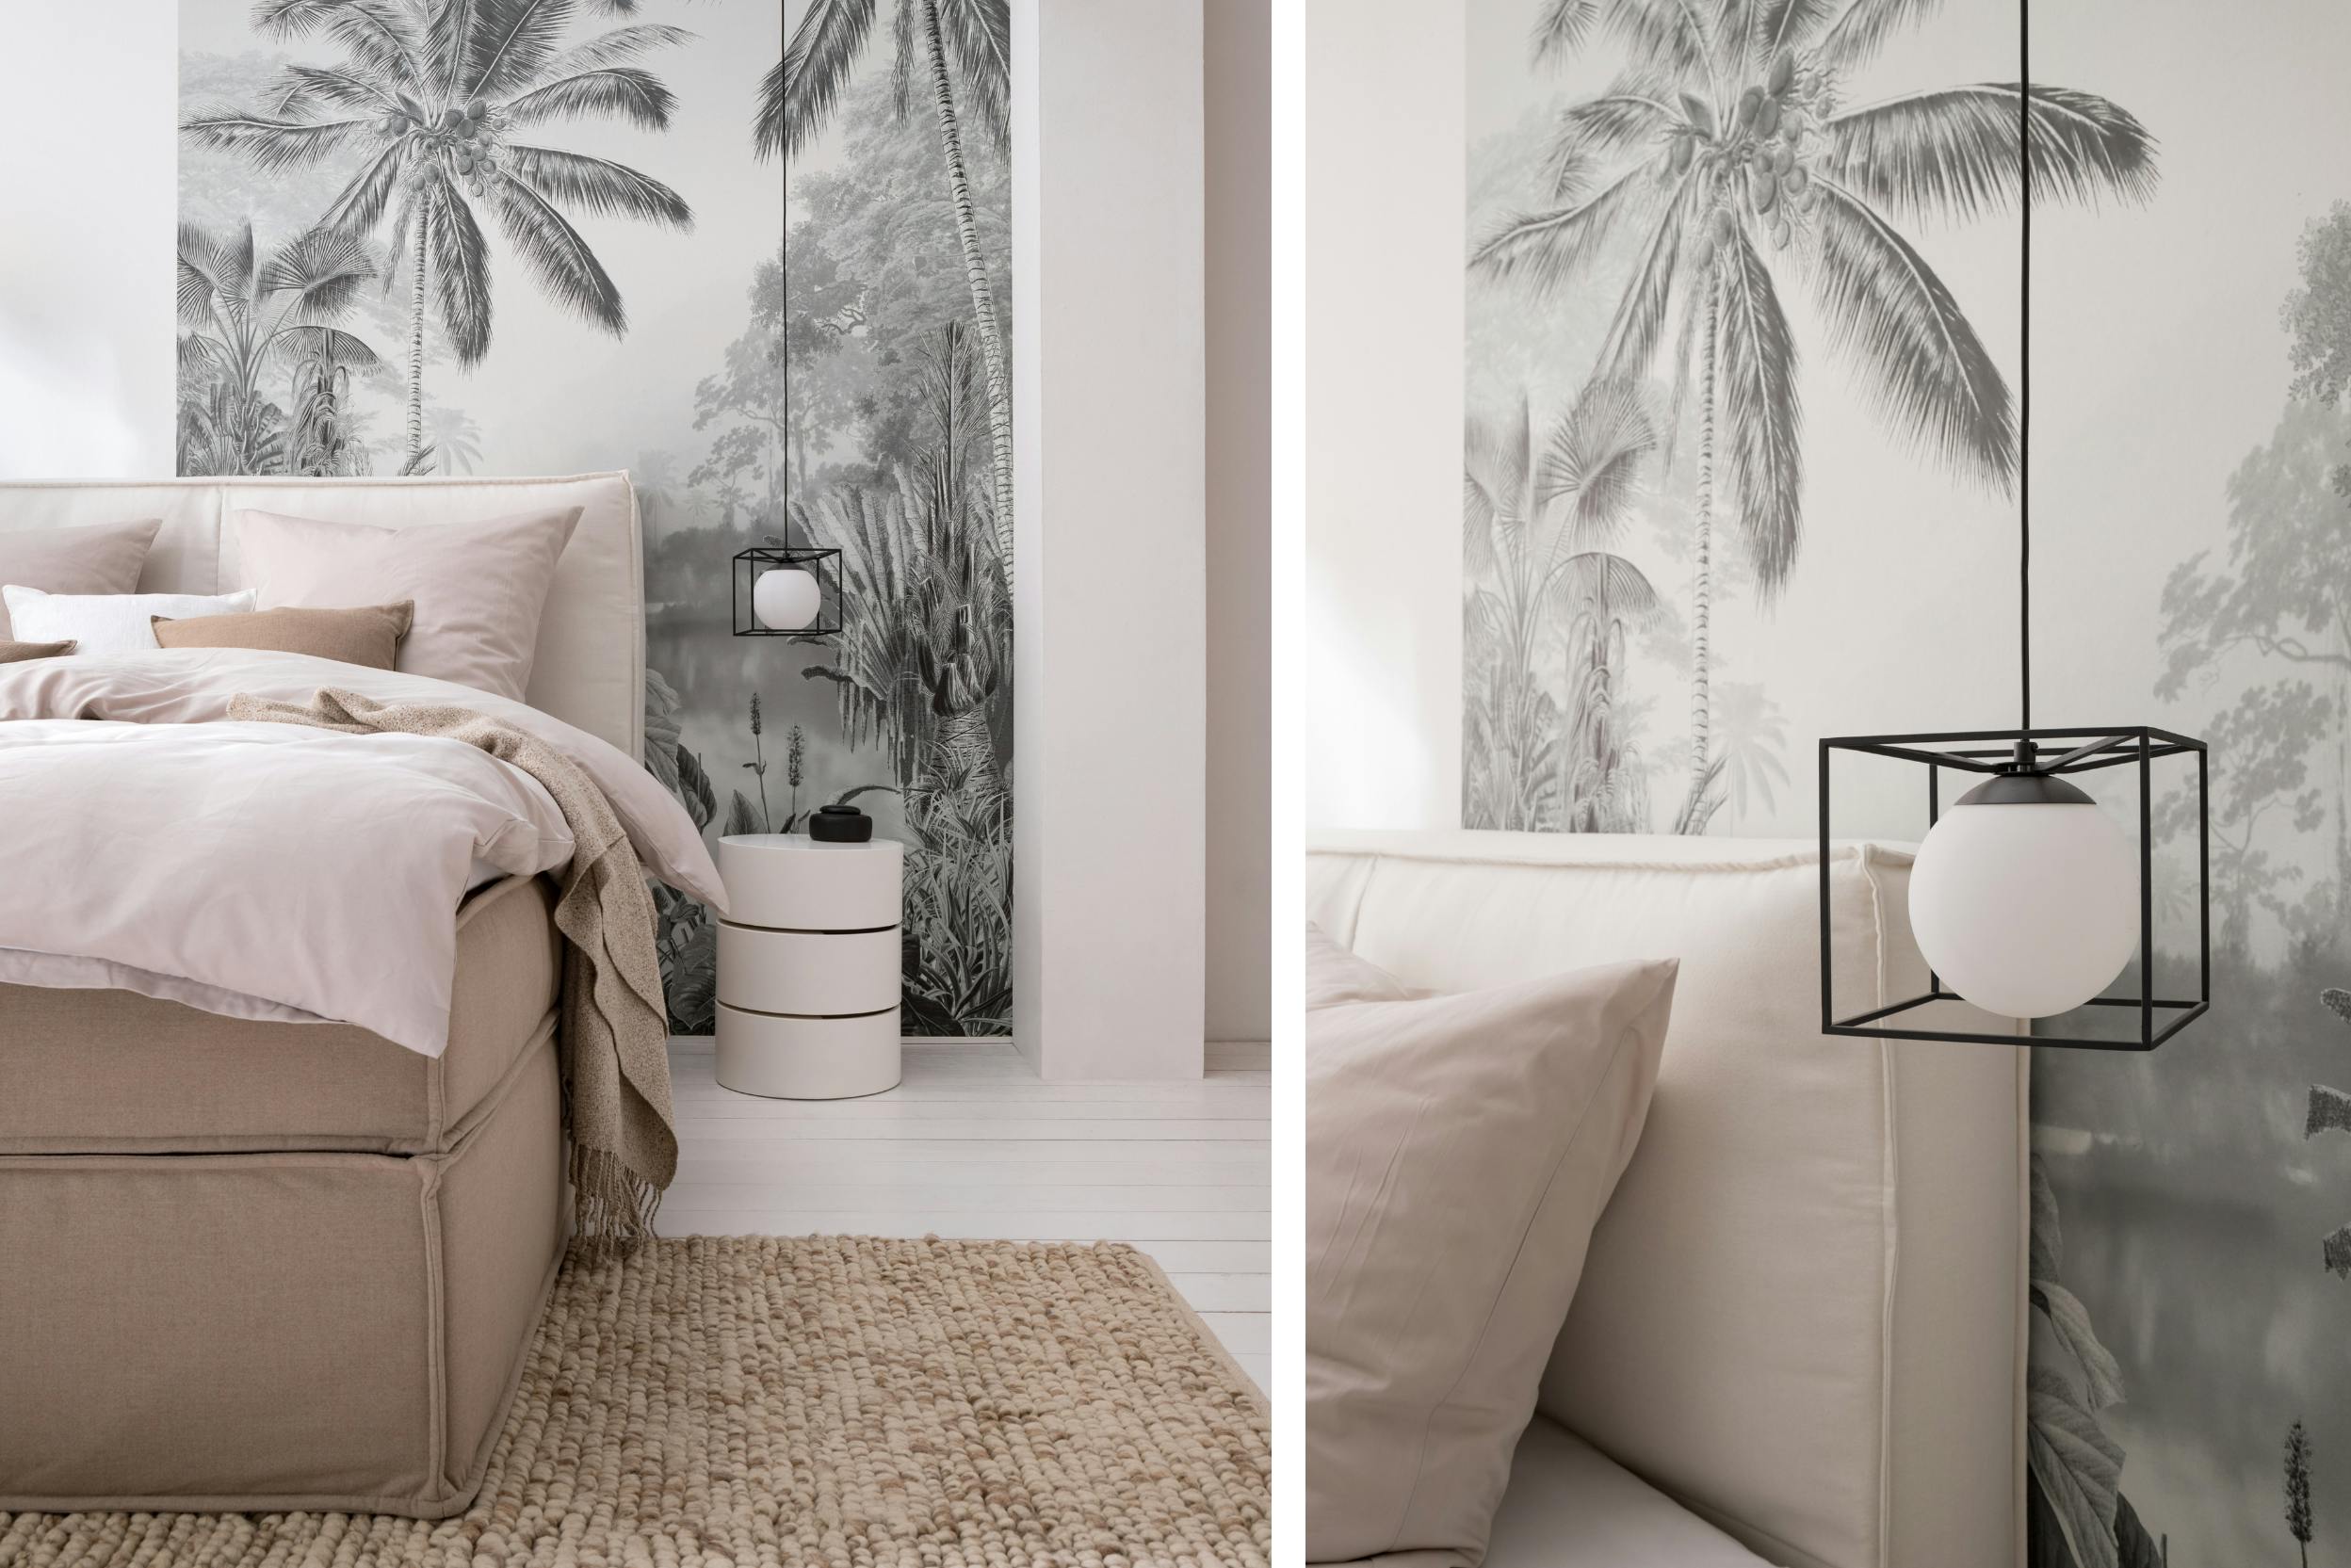 Schlafzimmer in Pastellrosa kombiniert mit moderner Pendelleuchte in Schwarz